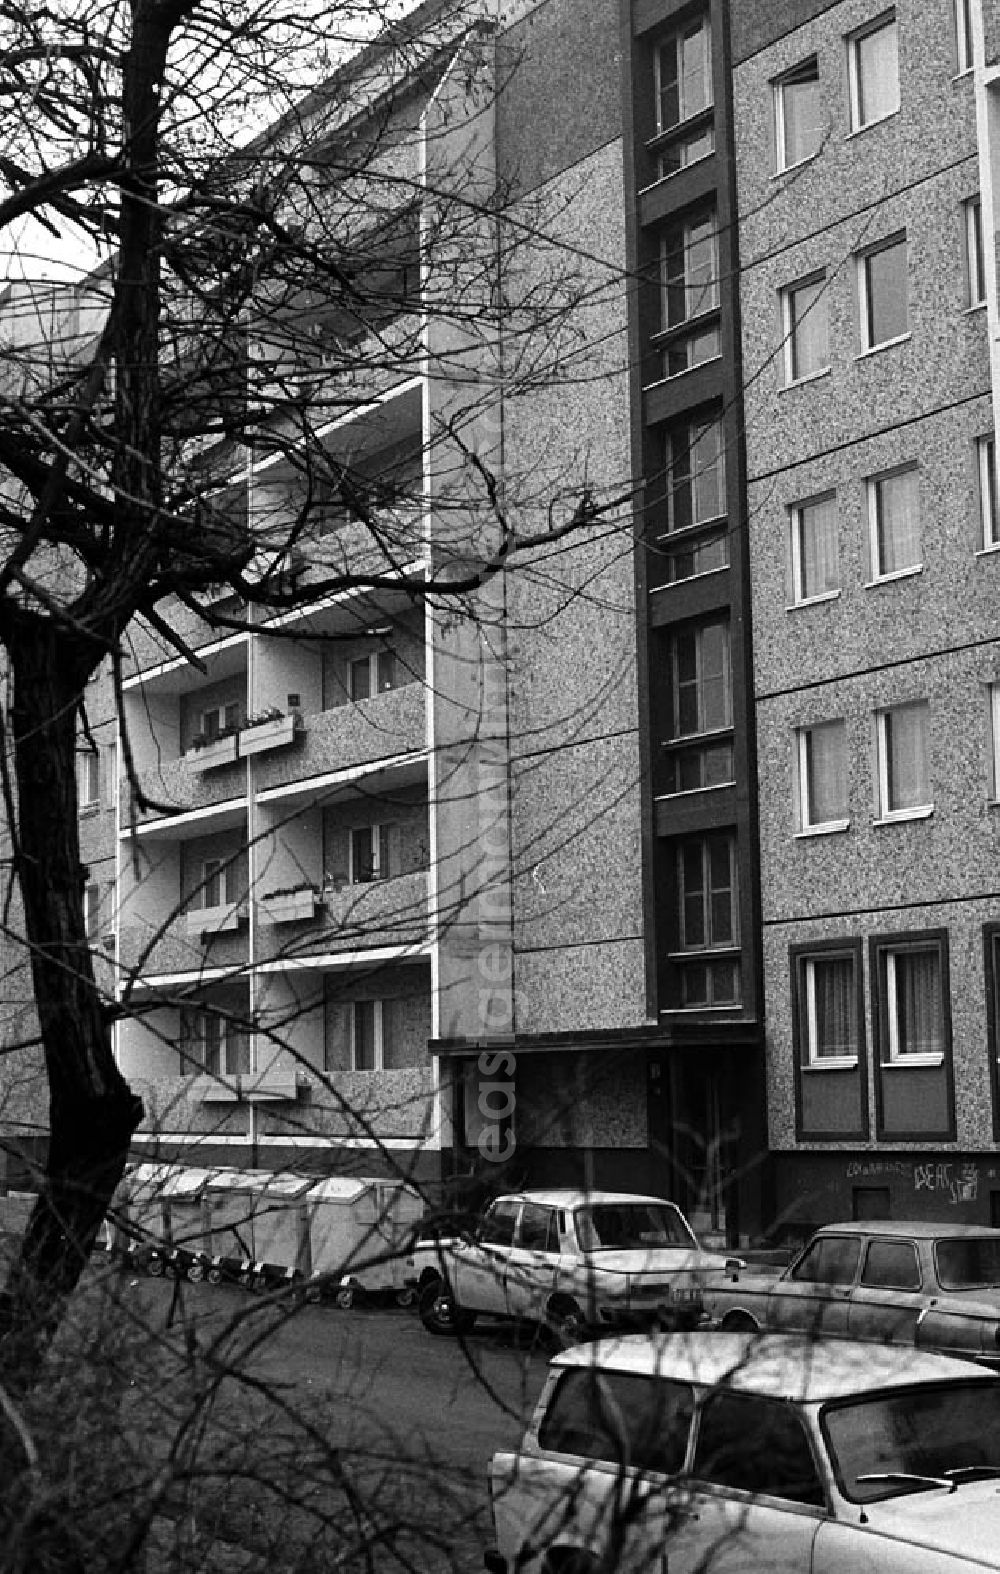 GDR picture archive: Berlin-Mitte - 15.12.1986 Altersgerechtes Wohnen in der Max-Beer-Straße in Berlin-Mitte Umschlagnr.: 1349